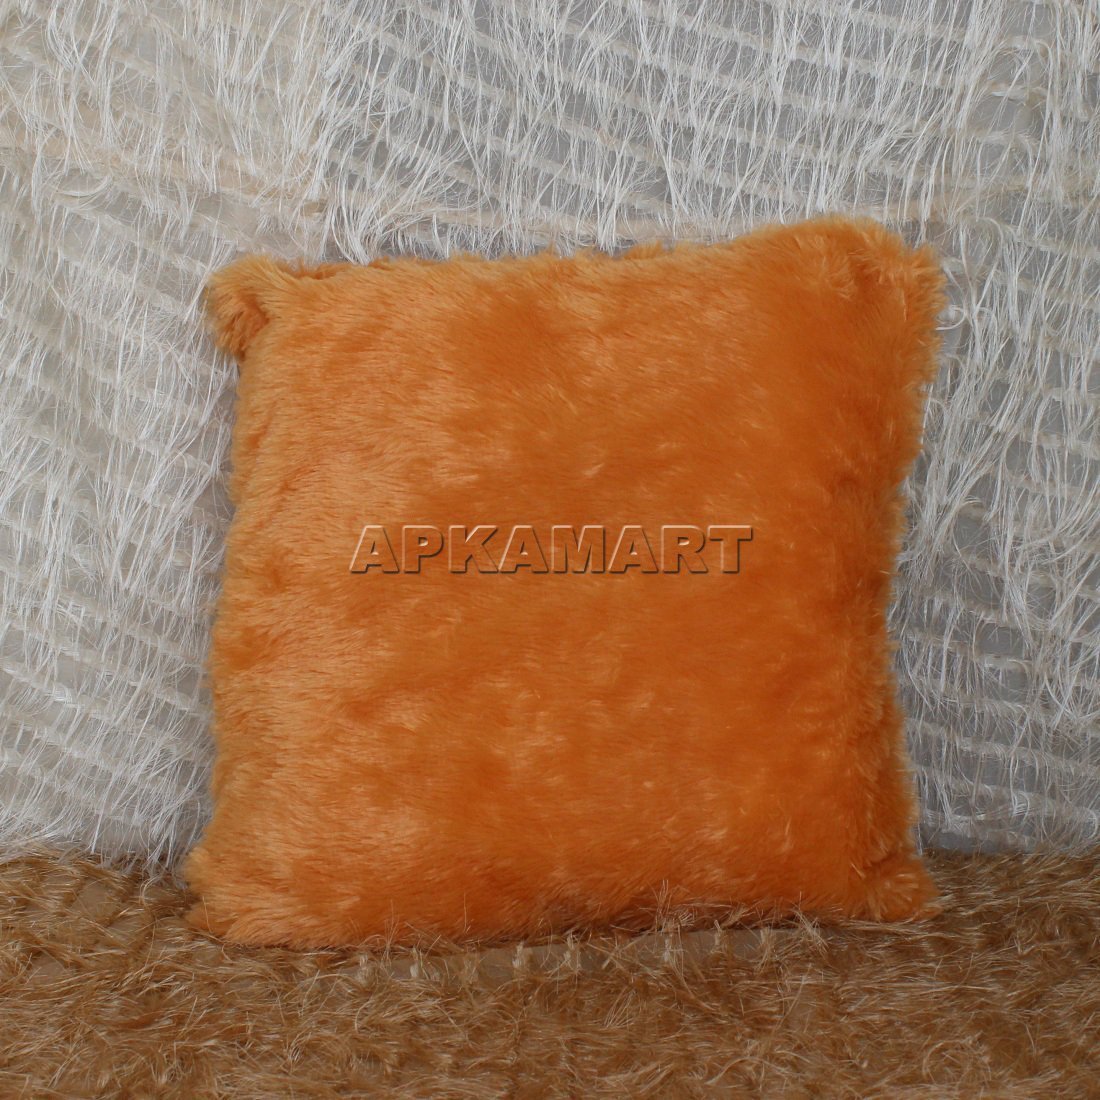 Soft Pillow - ApkaMart